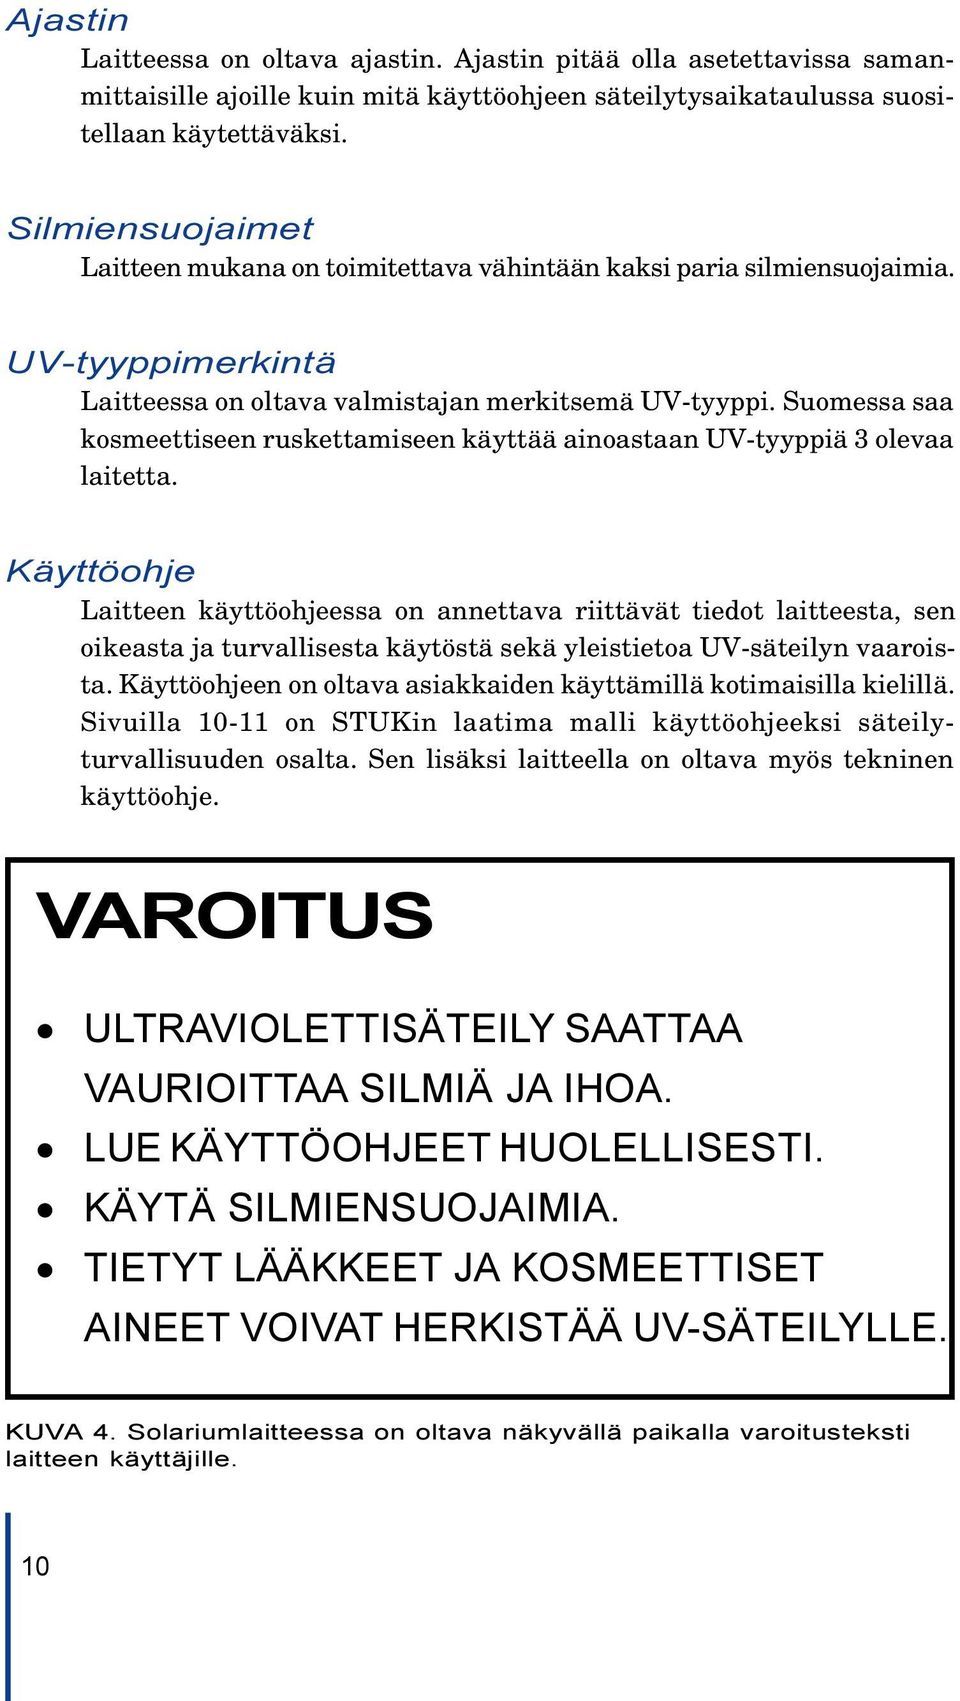 Suomessa saa kosmeettiseen ruskettamiseen käyttää ainoastaan UV-tyyppiä 3 olevaa laitetta.